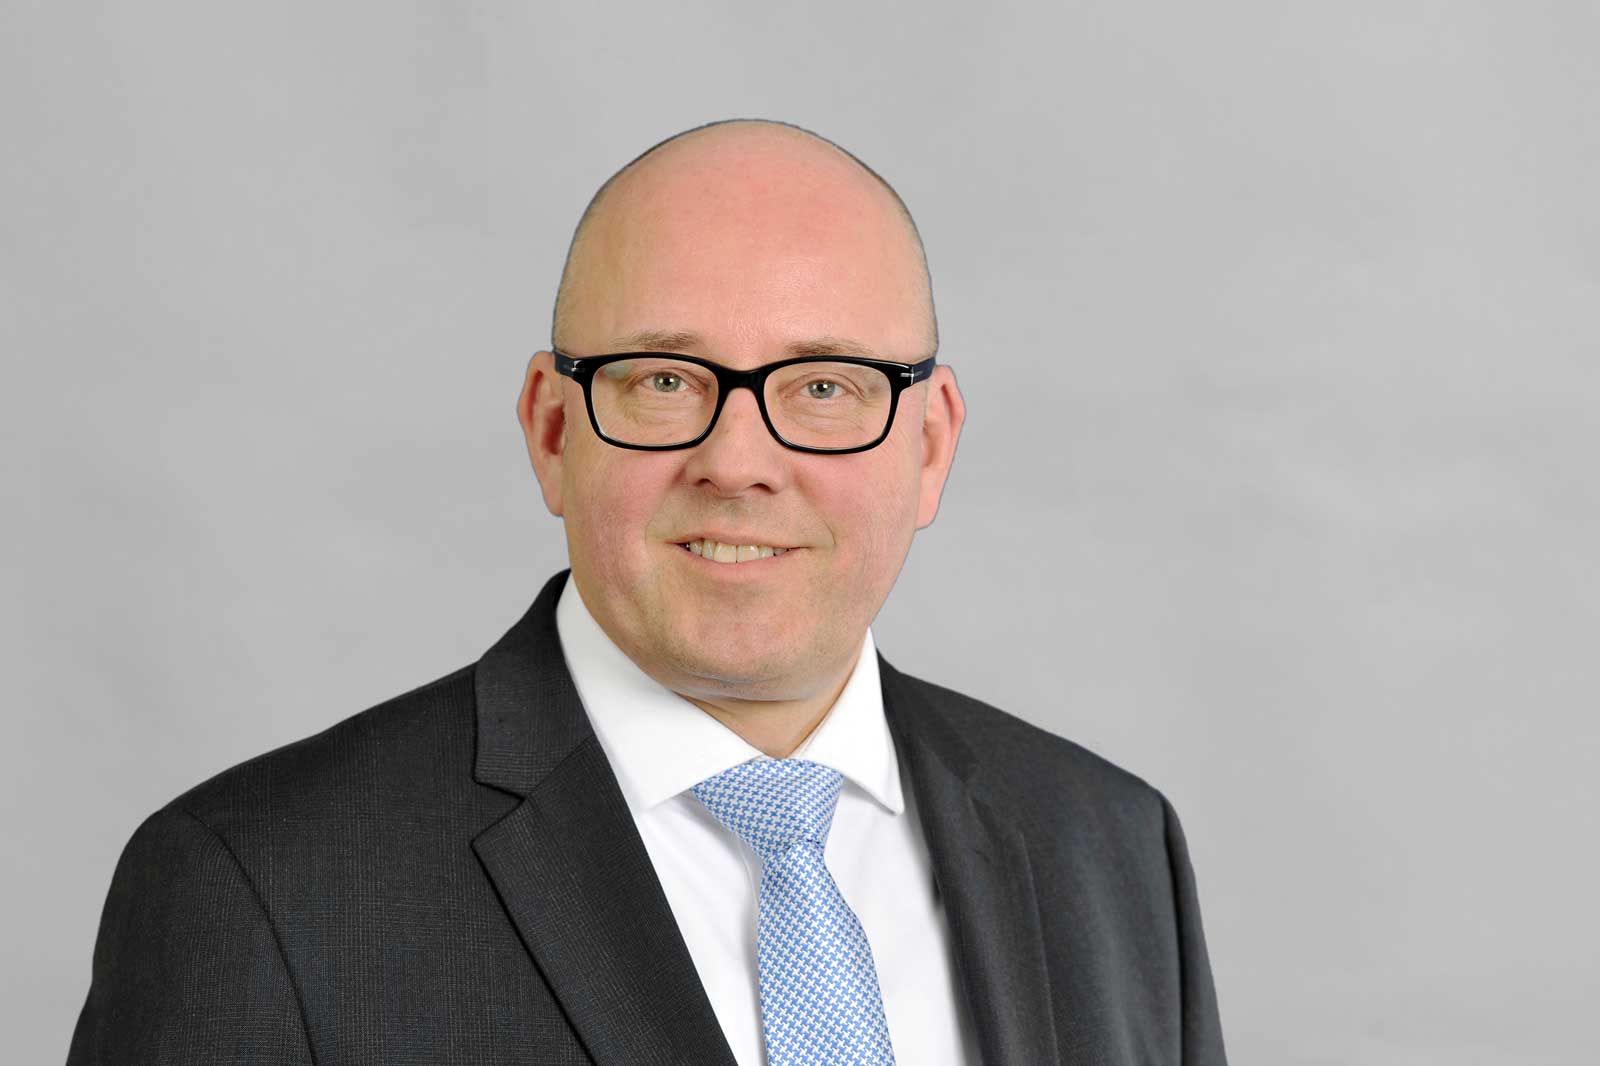 Ingo Birnkraut | CEO und Managing Director @ RWE Technology GmbH